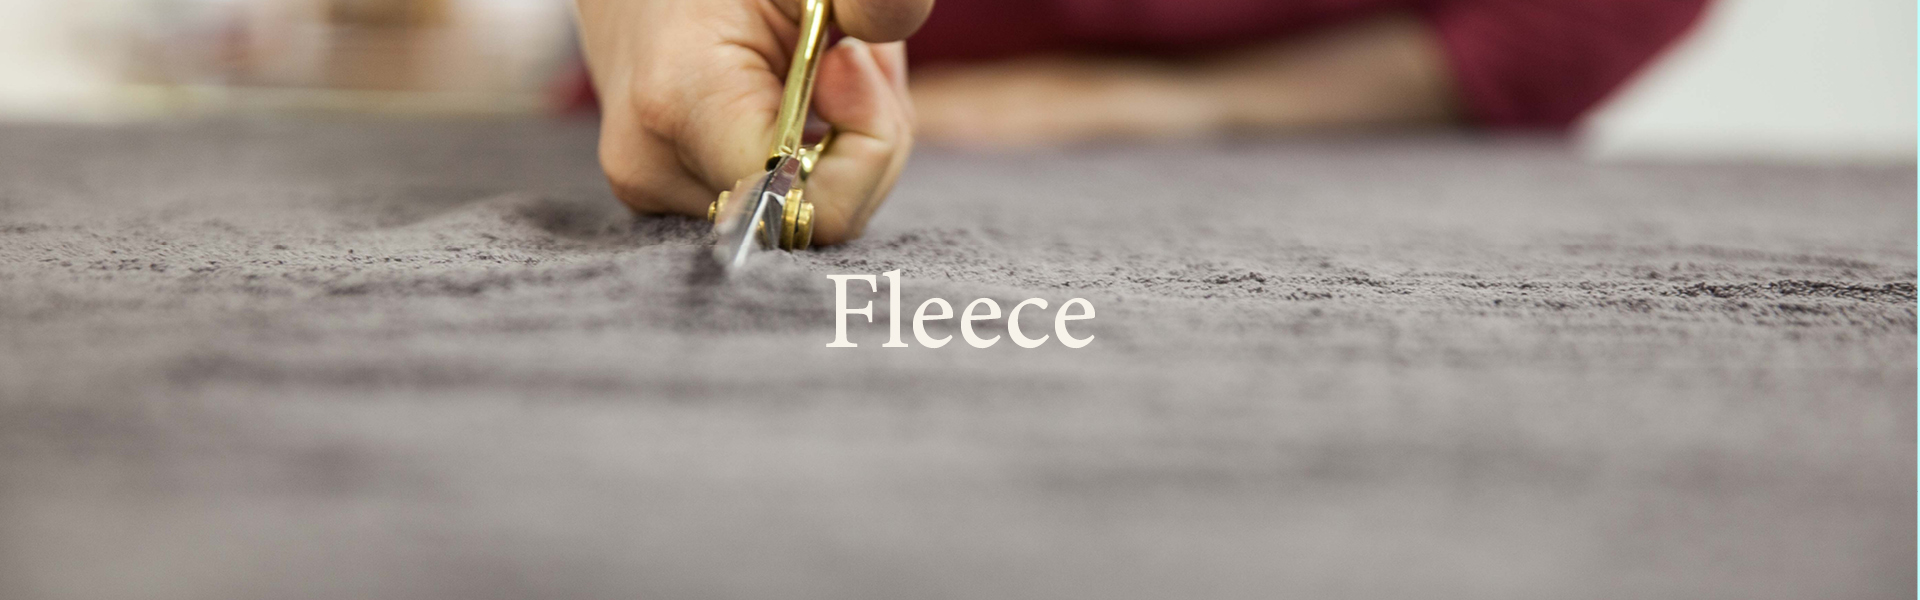 Kategorieseite_fleece